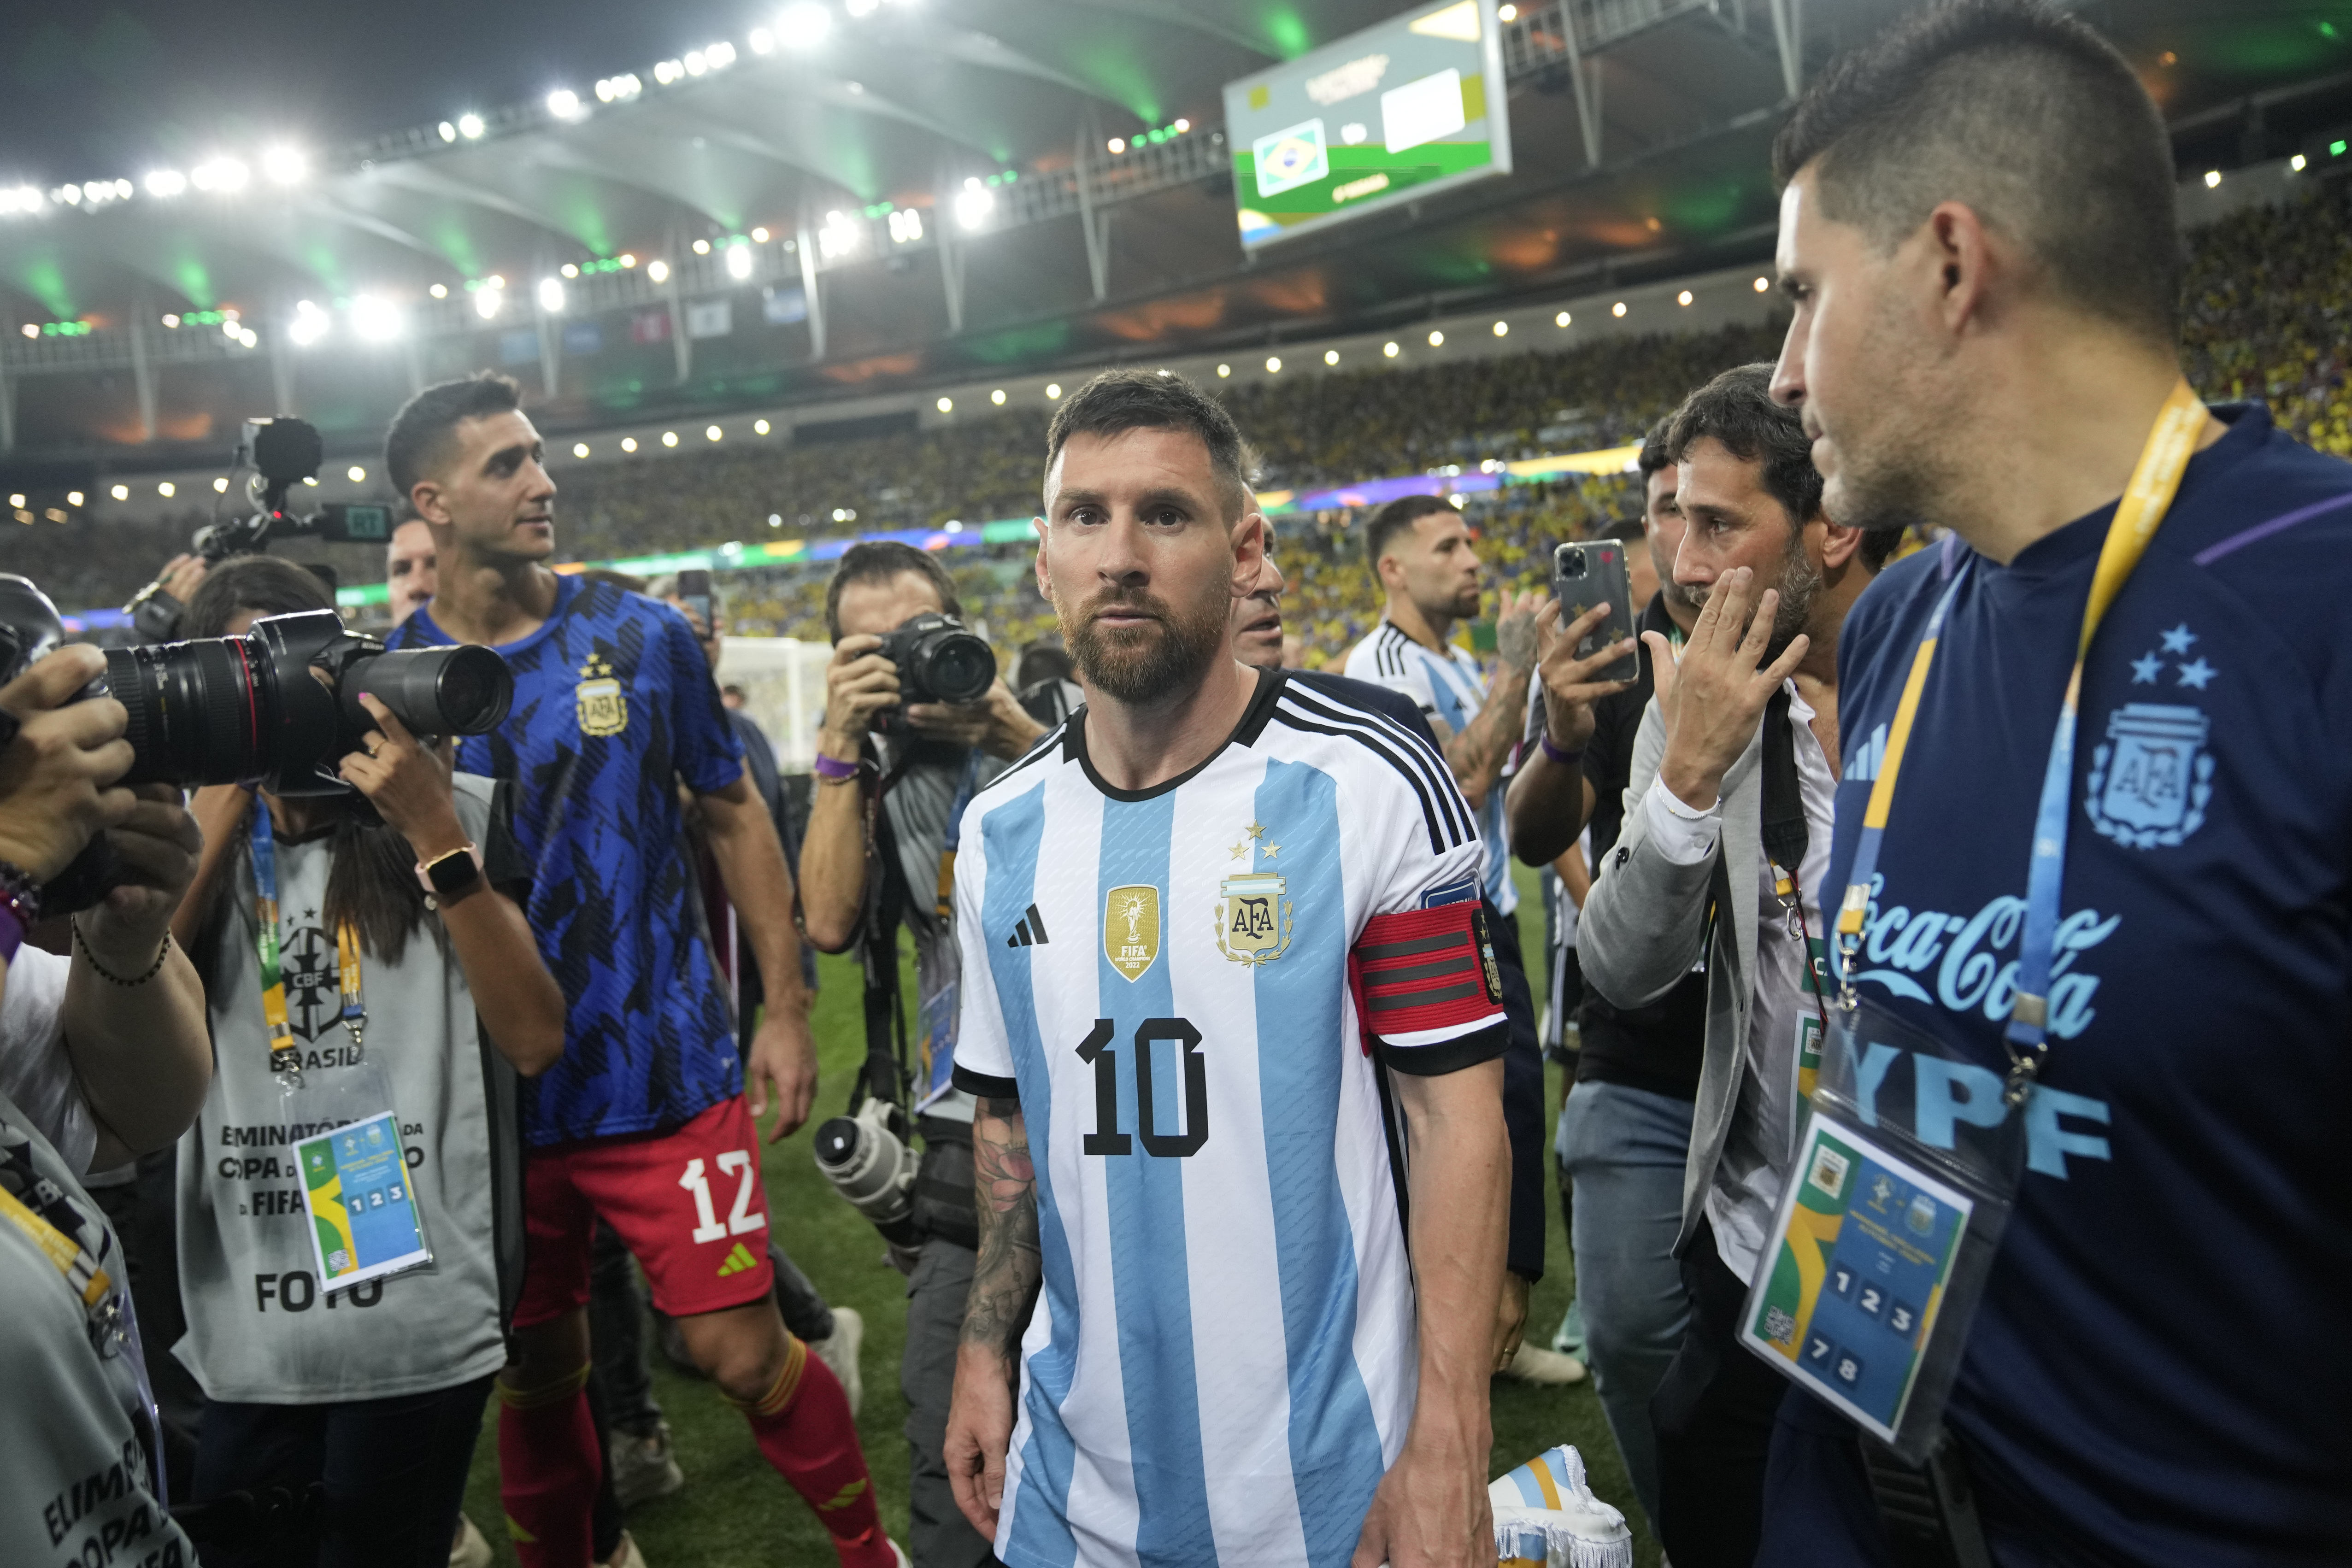 Lionel Messi sah entsetzt zu, wie sich die Szene abspielte